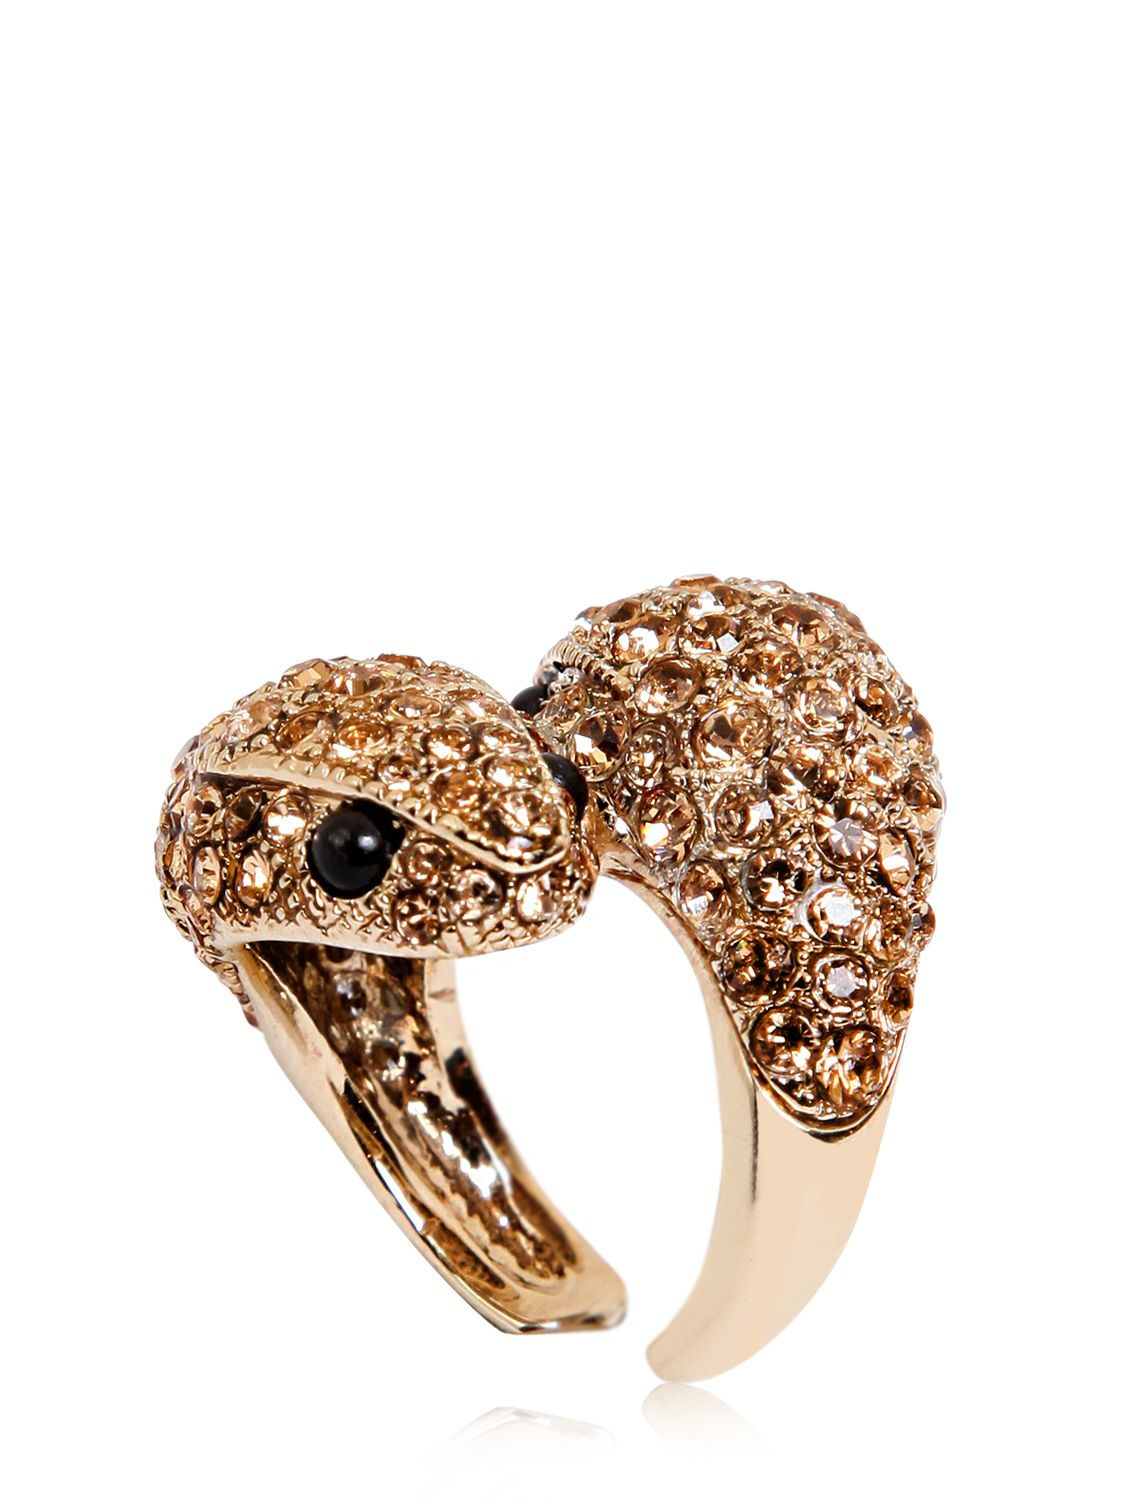 Roberto Cavalli Embellished Snake Ring in Gold (Metallic) - Lyst